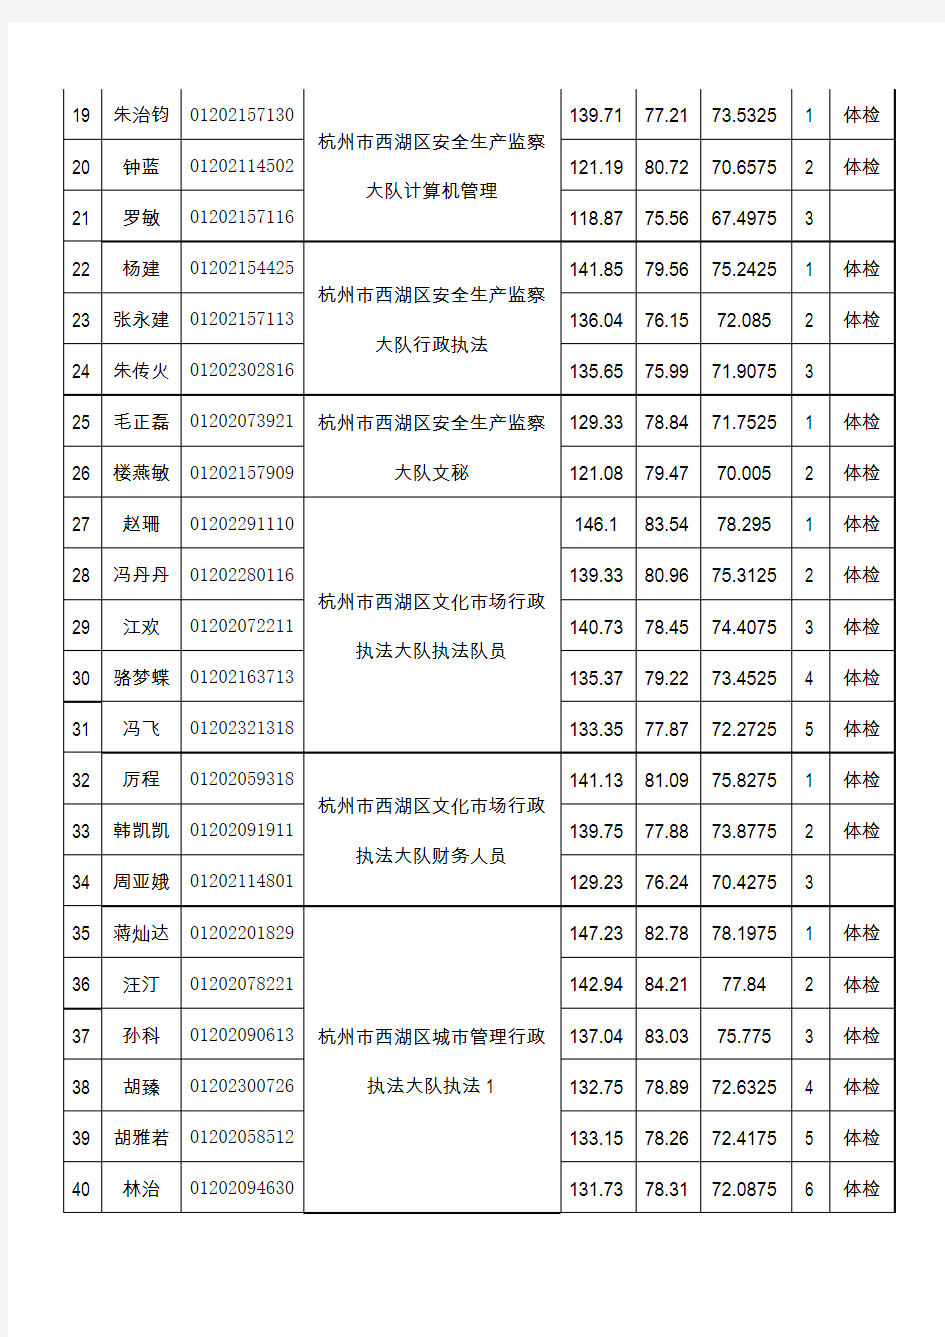 2011年杭州市西湖区考试录用公务员总成绩花名册(精)